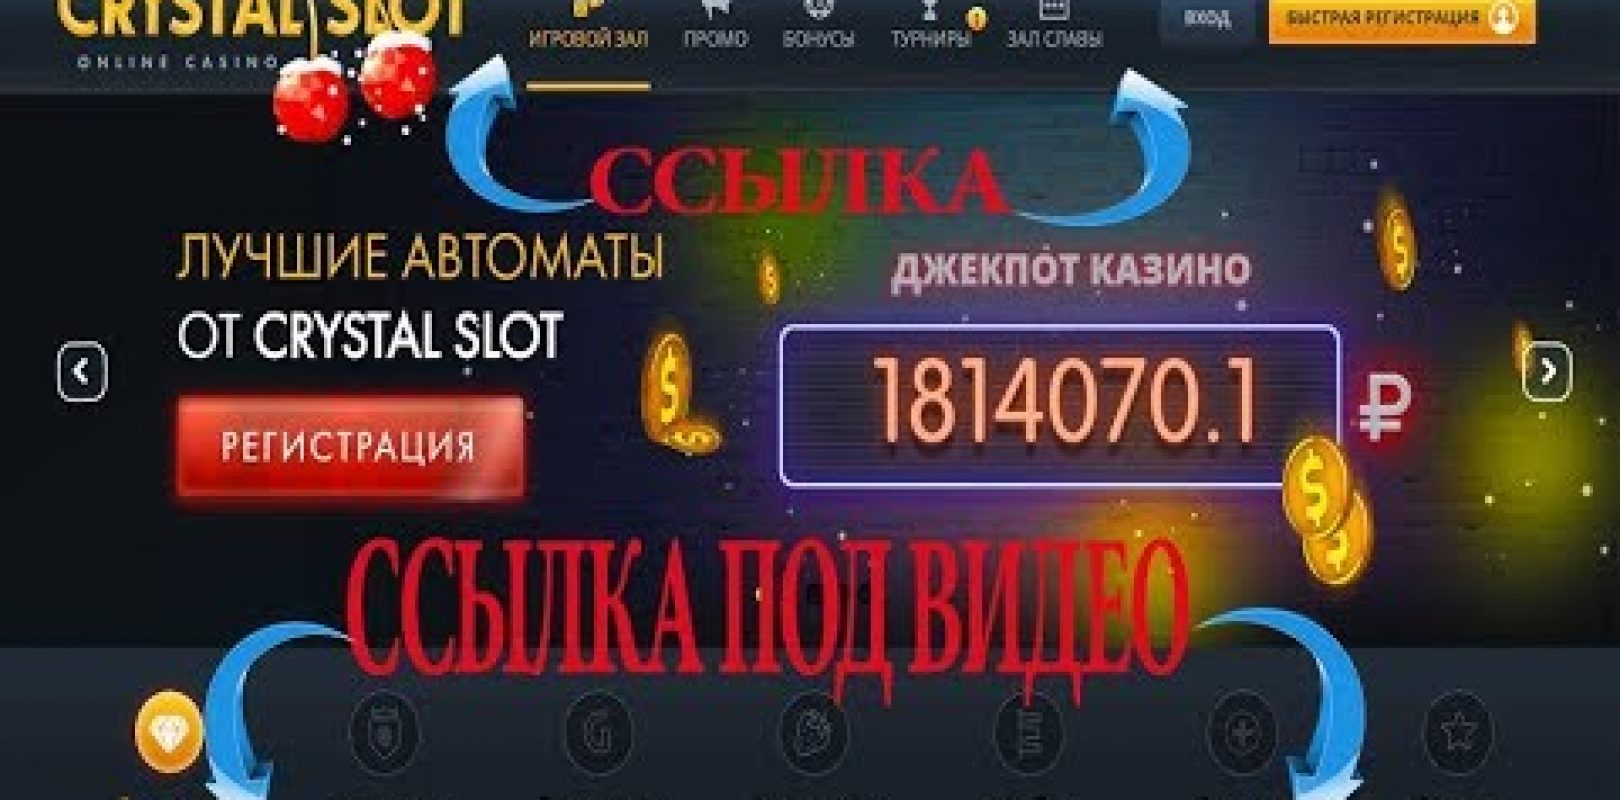 Wild casino bonus codes